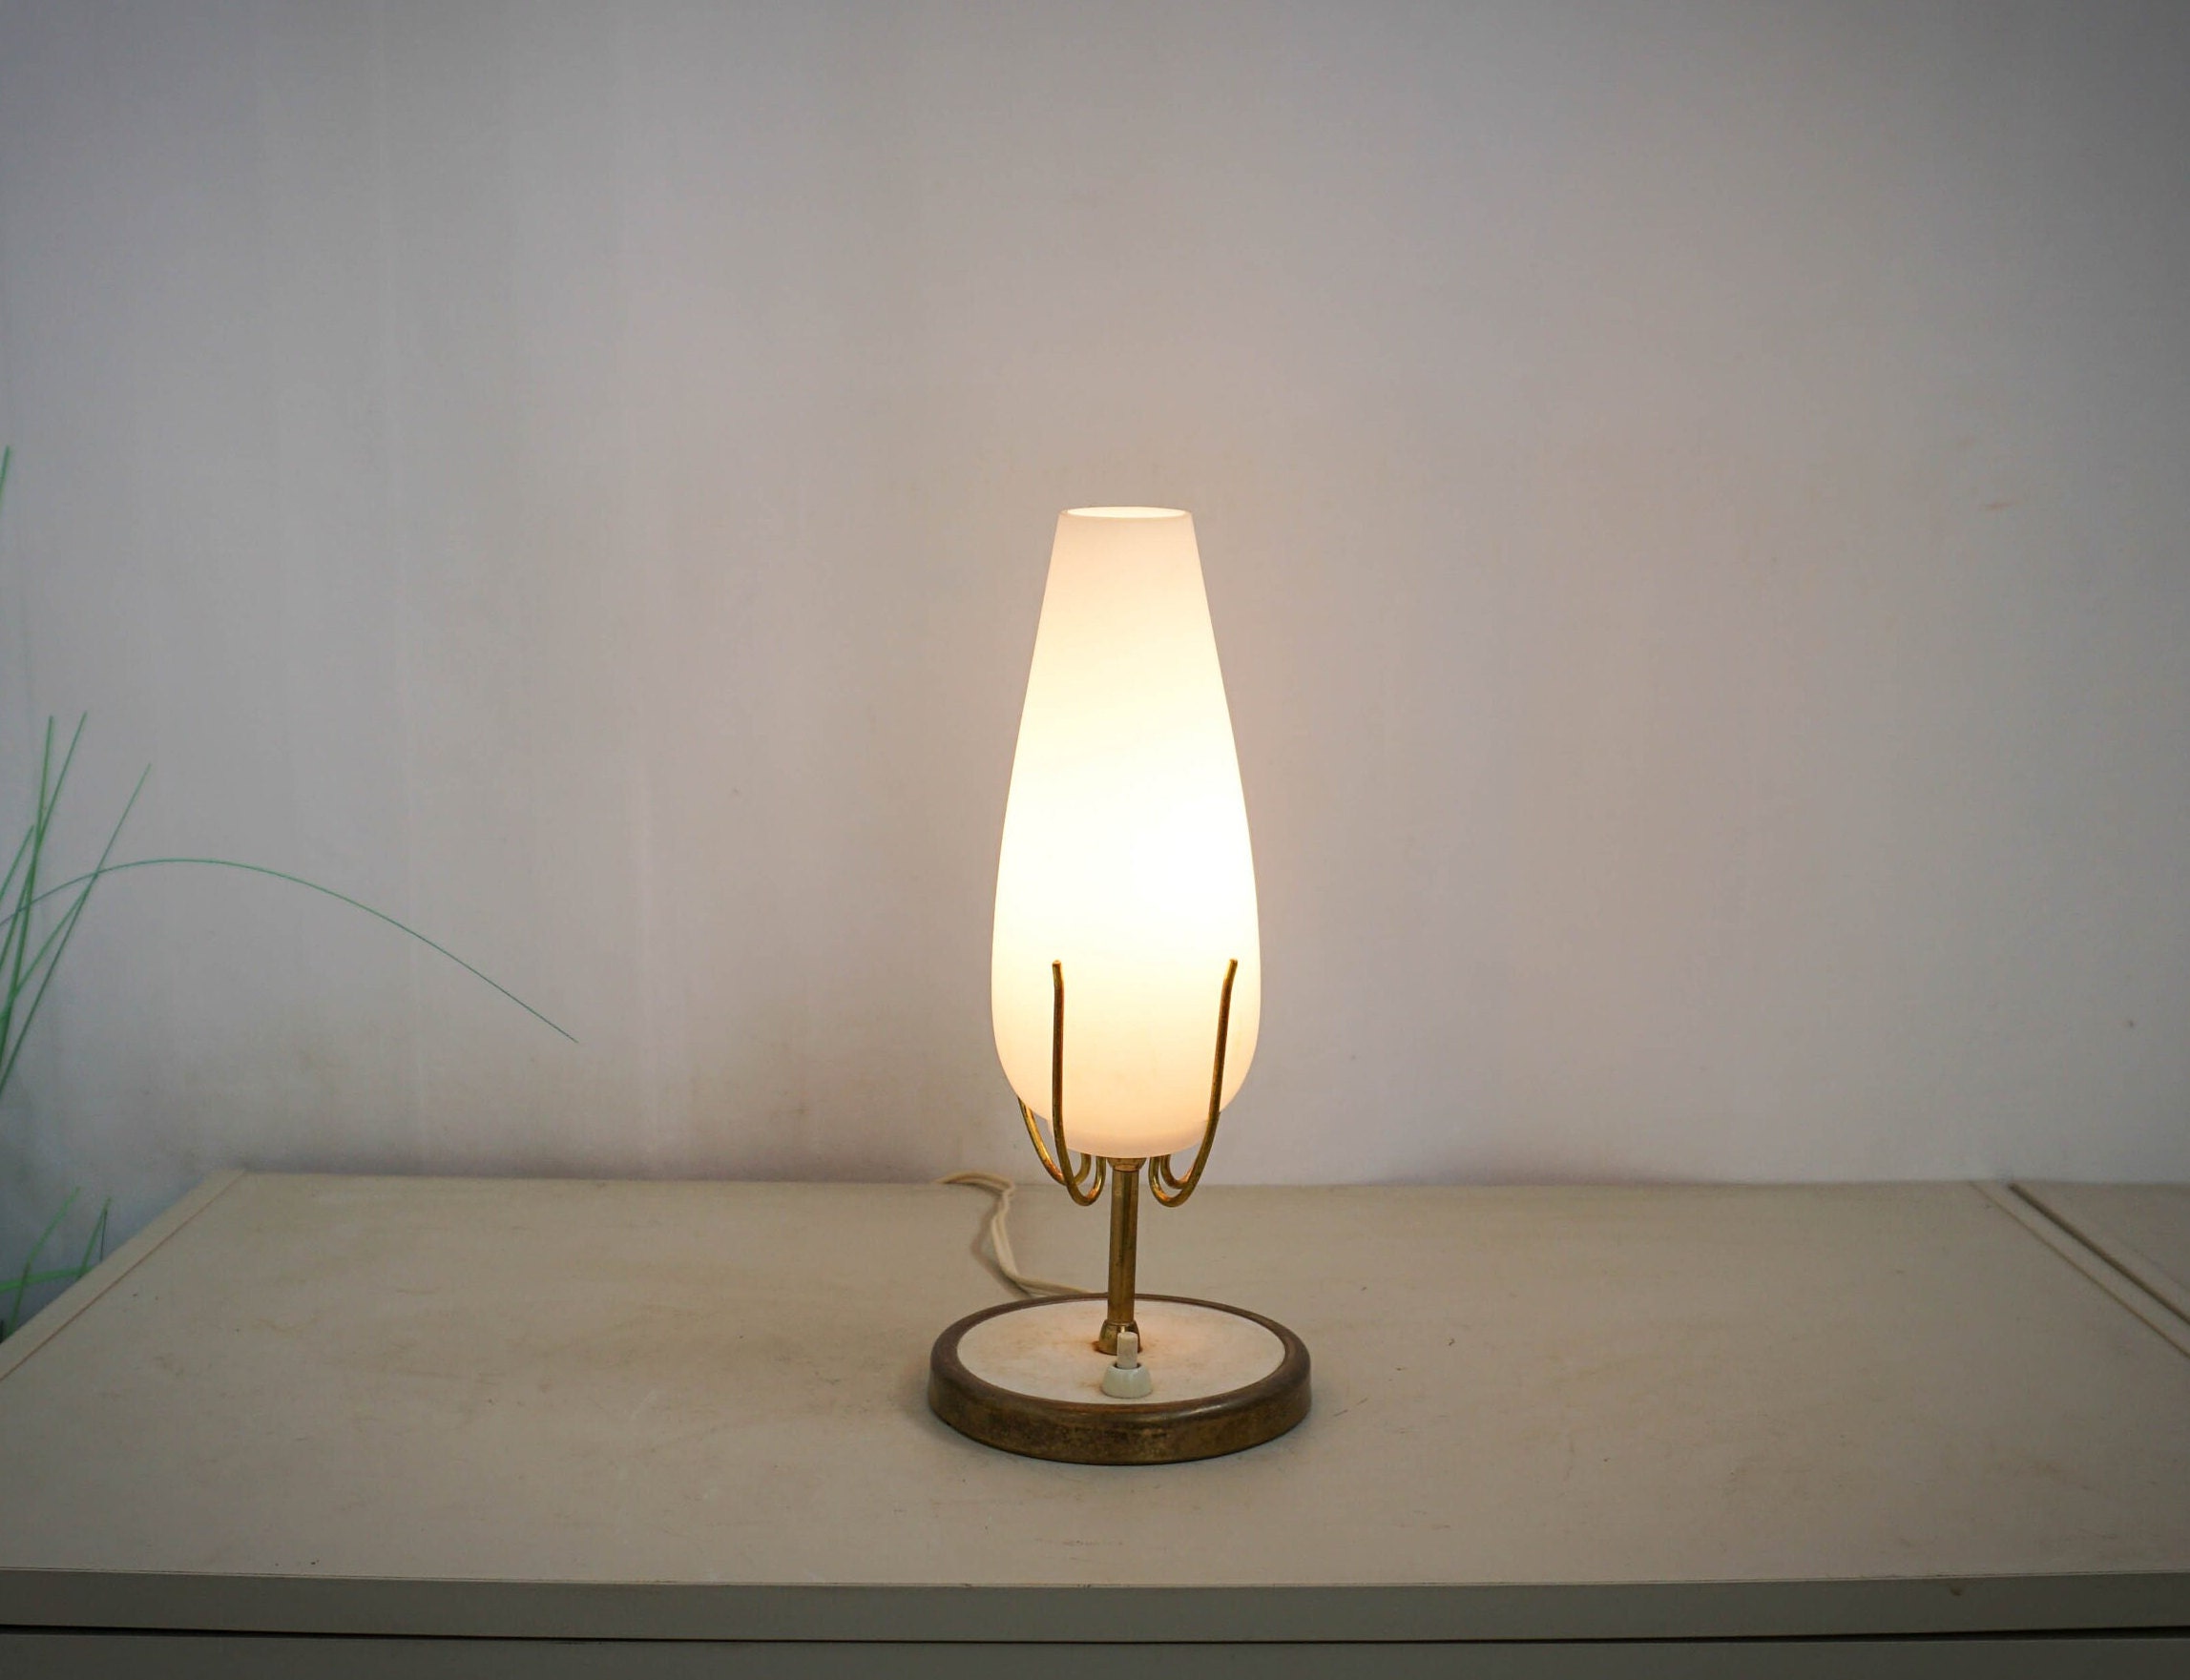 Lámpara a pilas con temporizador, lámparas de mesa para dormitorio, lámpara  inalámbrica con bombilla LED, lámpara decorativa para sala de estar, baño